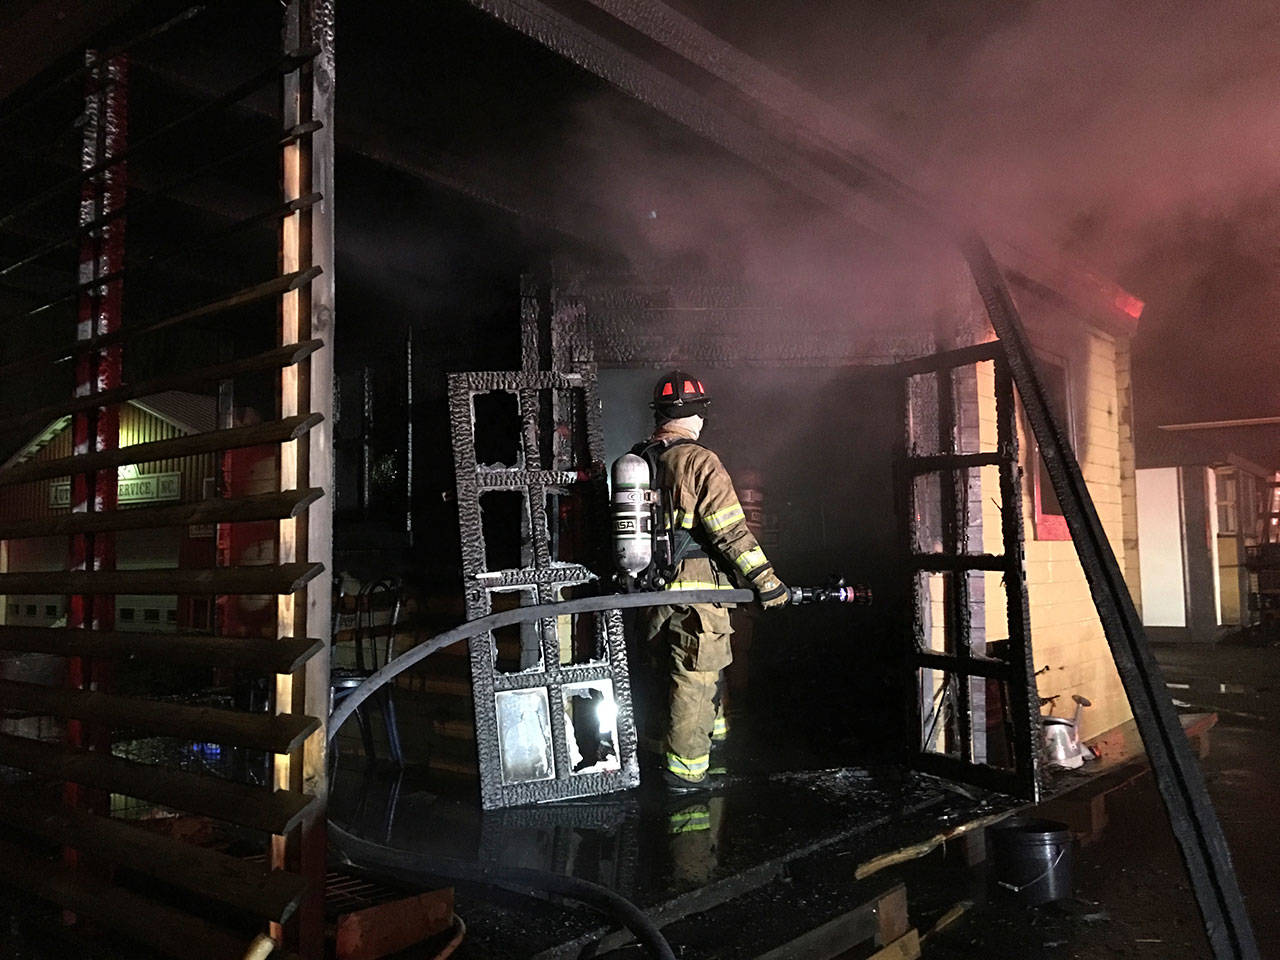 East Jefferson Fire-Rescue fights an early morning blaze in Port Townsend on Wednesday. (Bill Beezley/East Jefferson Fire-Rescue)